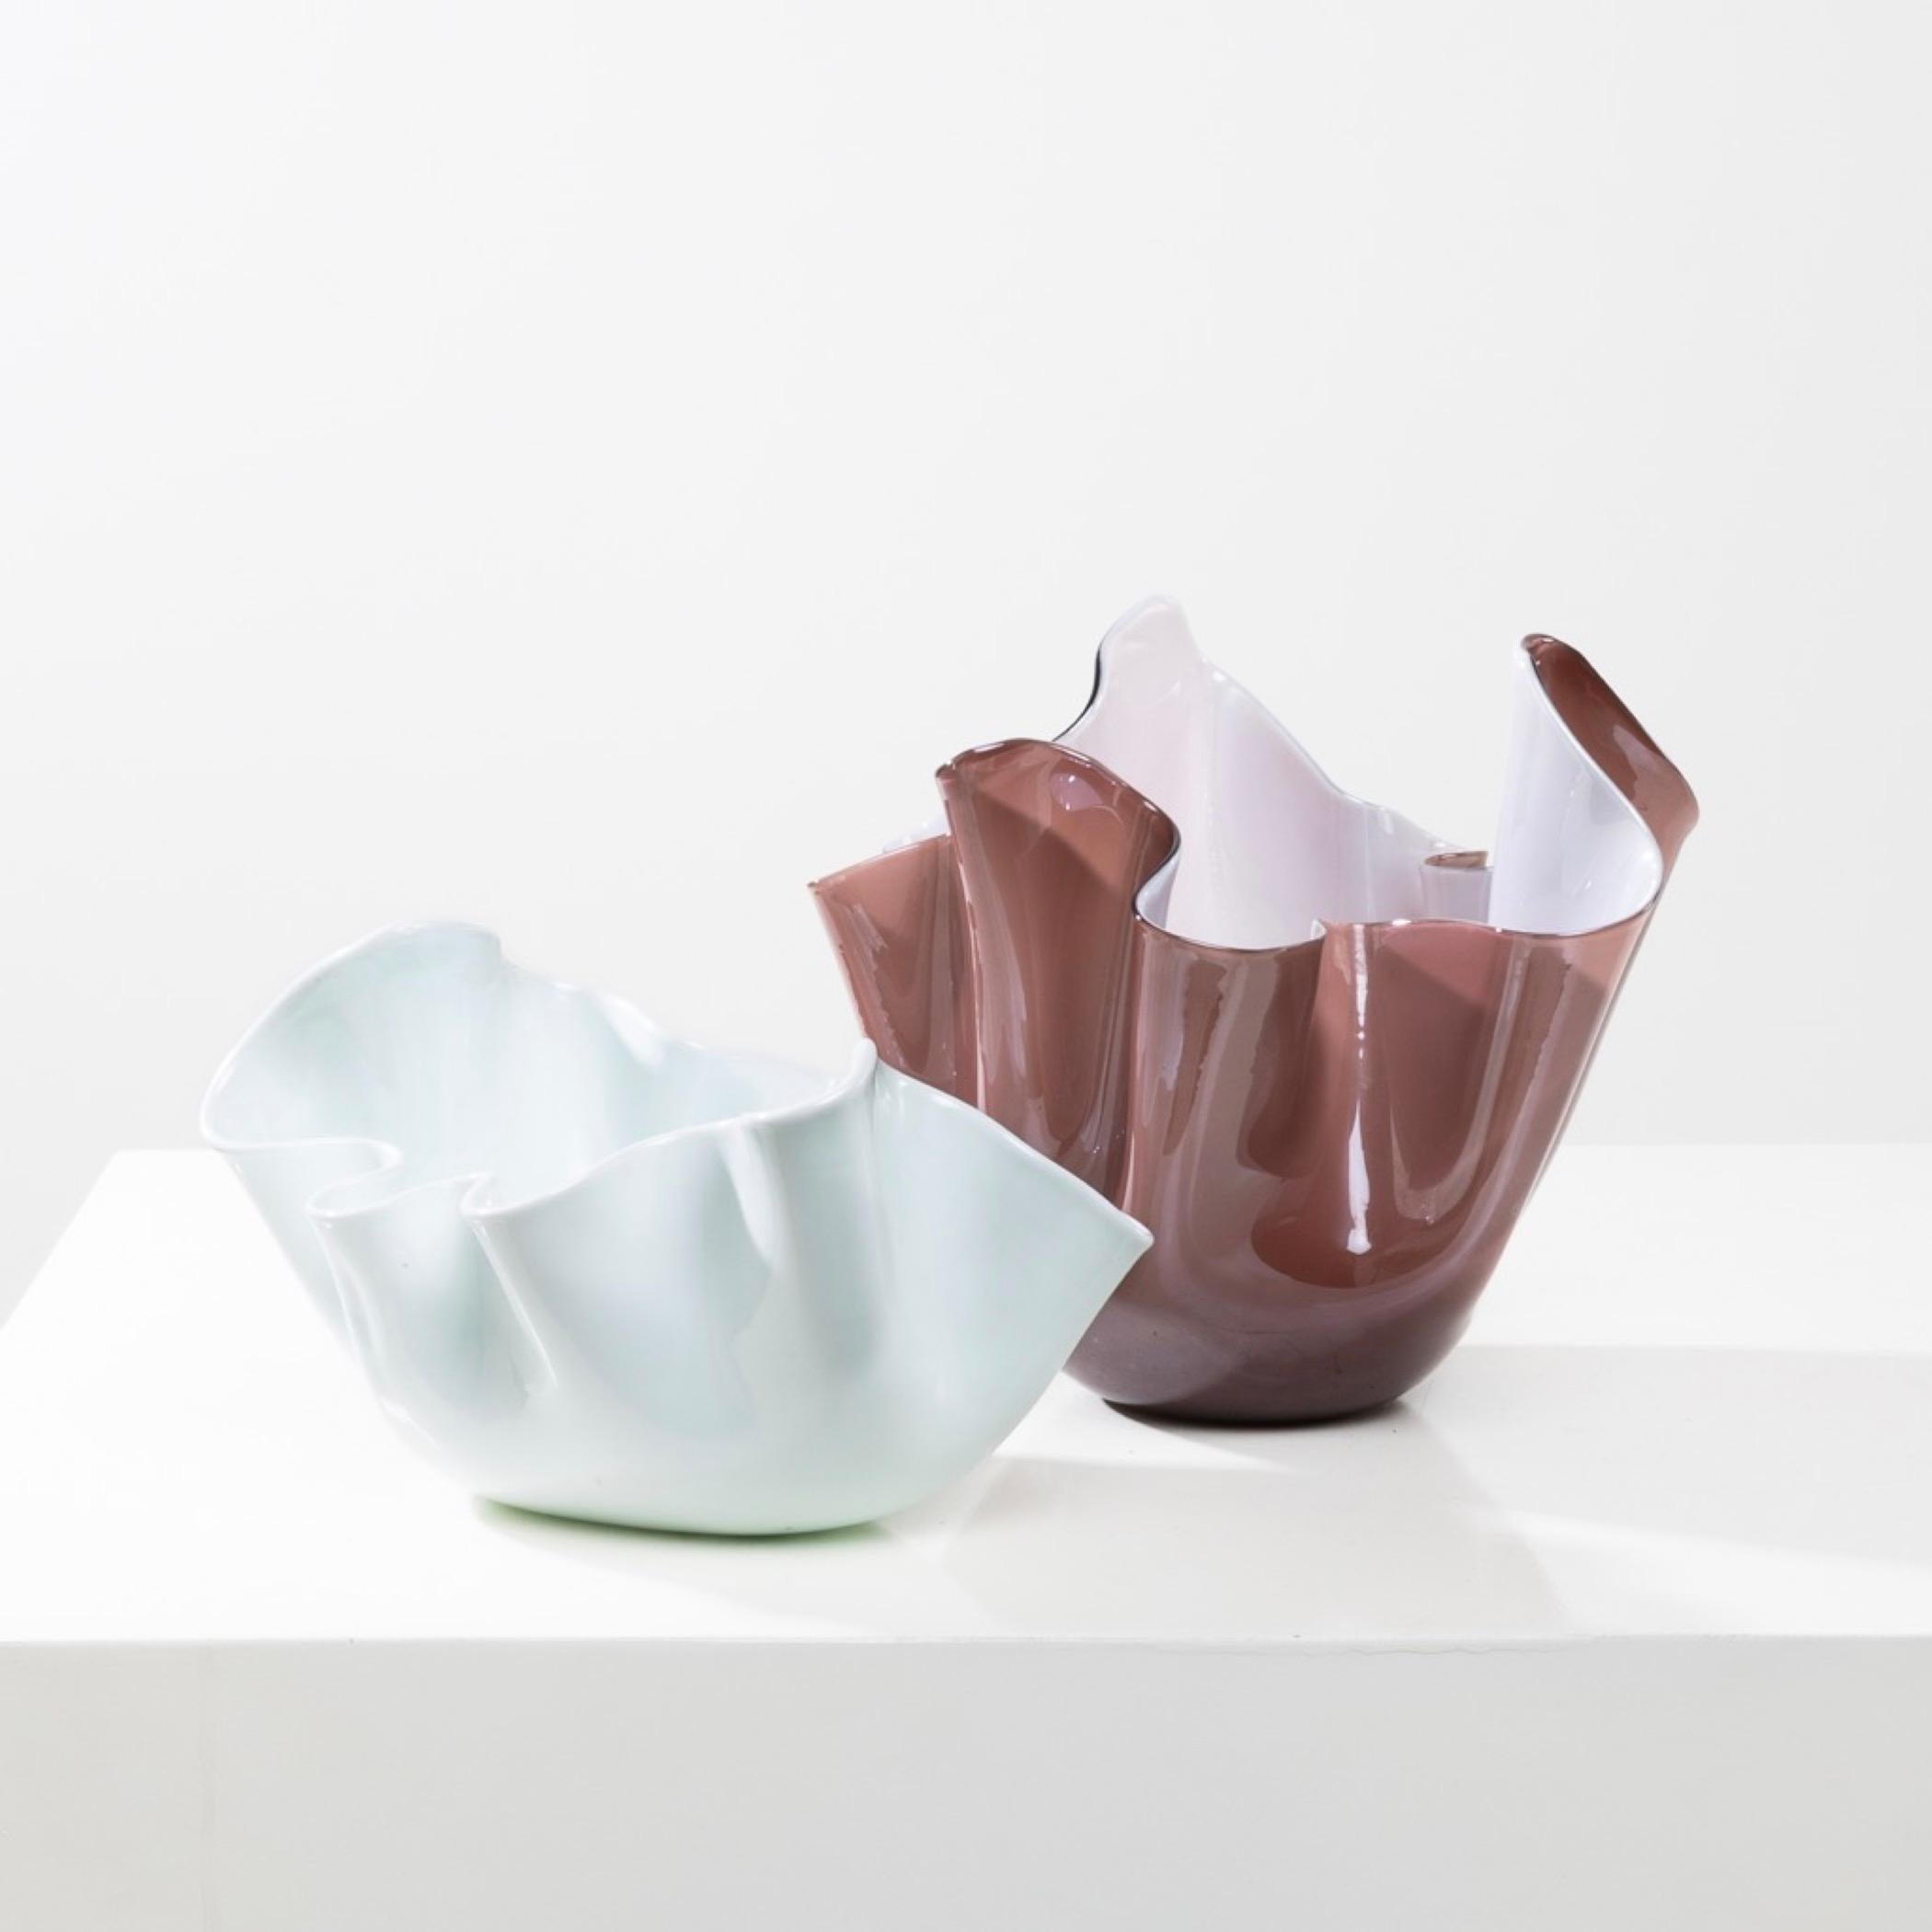 Fazzoletto by Fulvio Bianconi – Handkerchief vase – Venini Murano For Sale 6